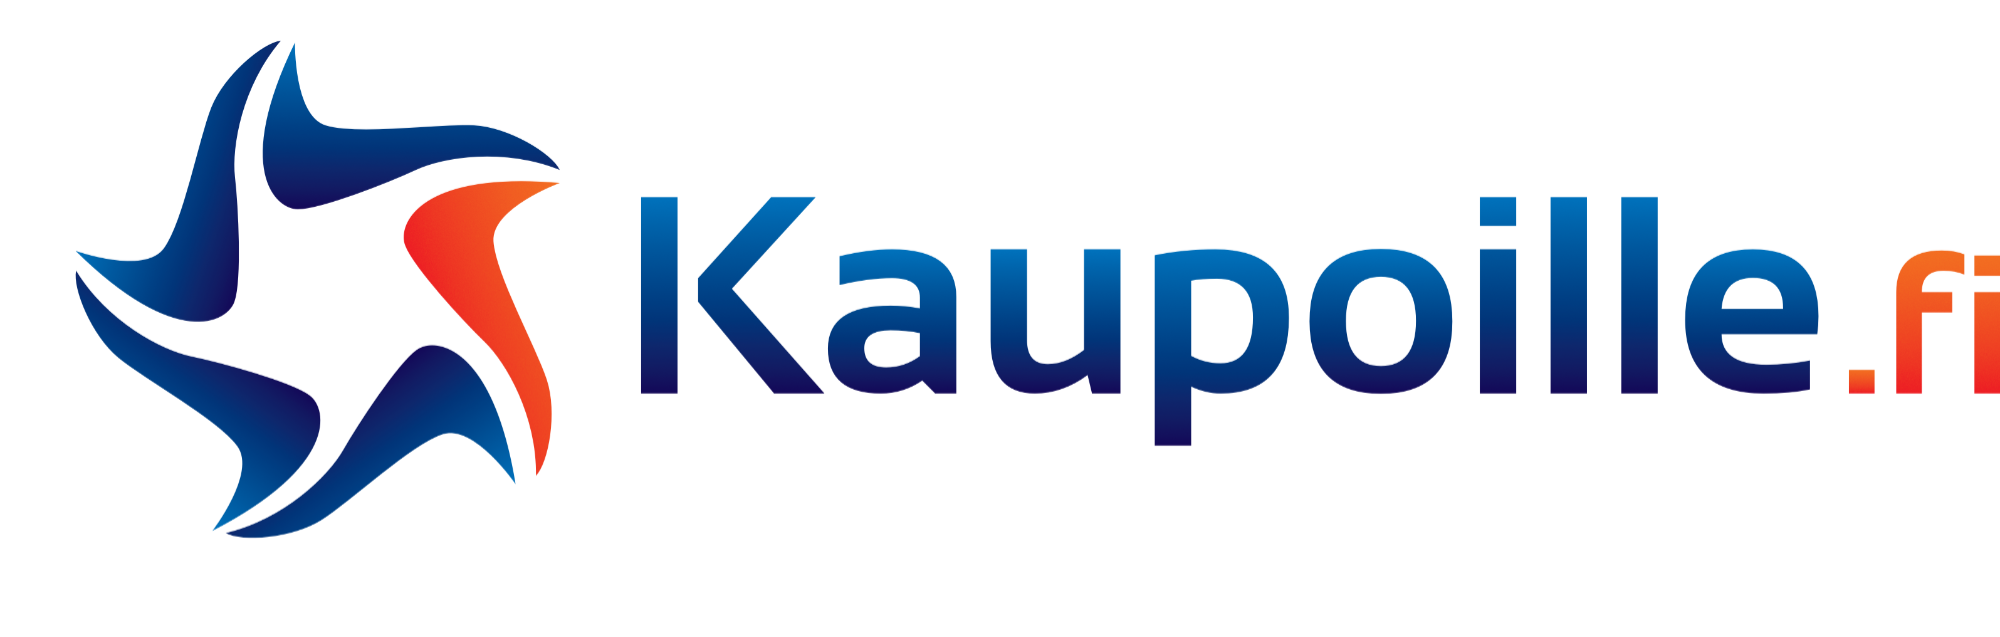 Kaupoille.fi logo